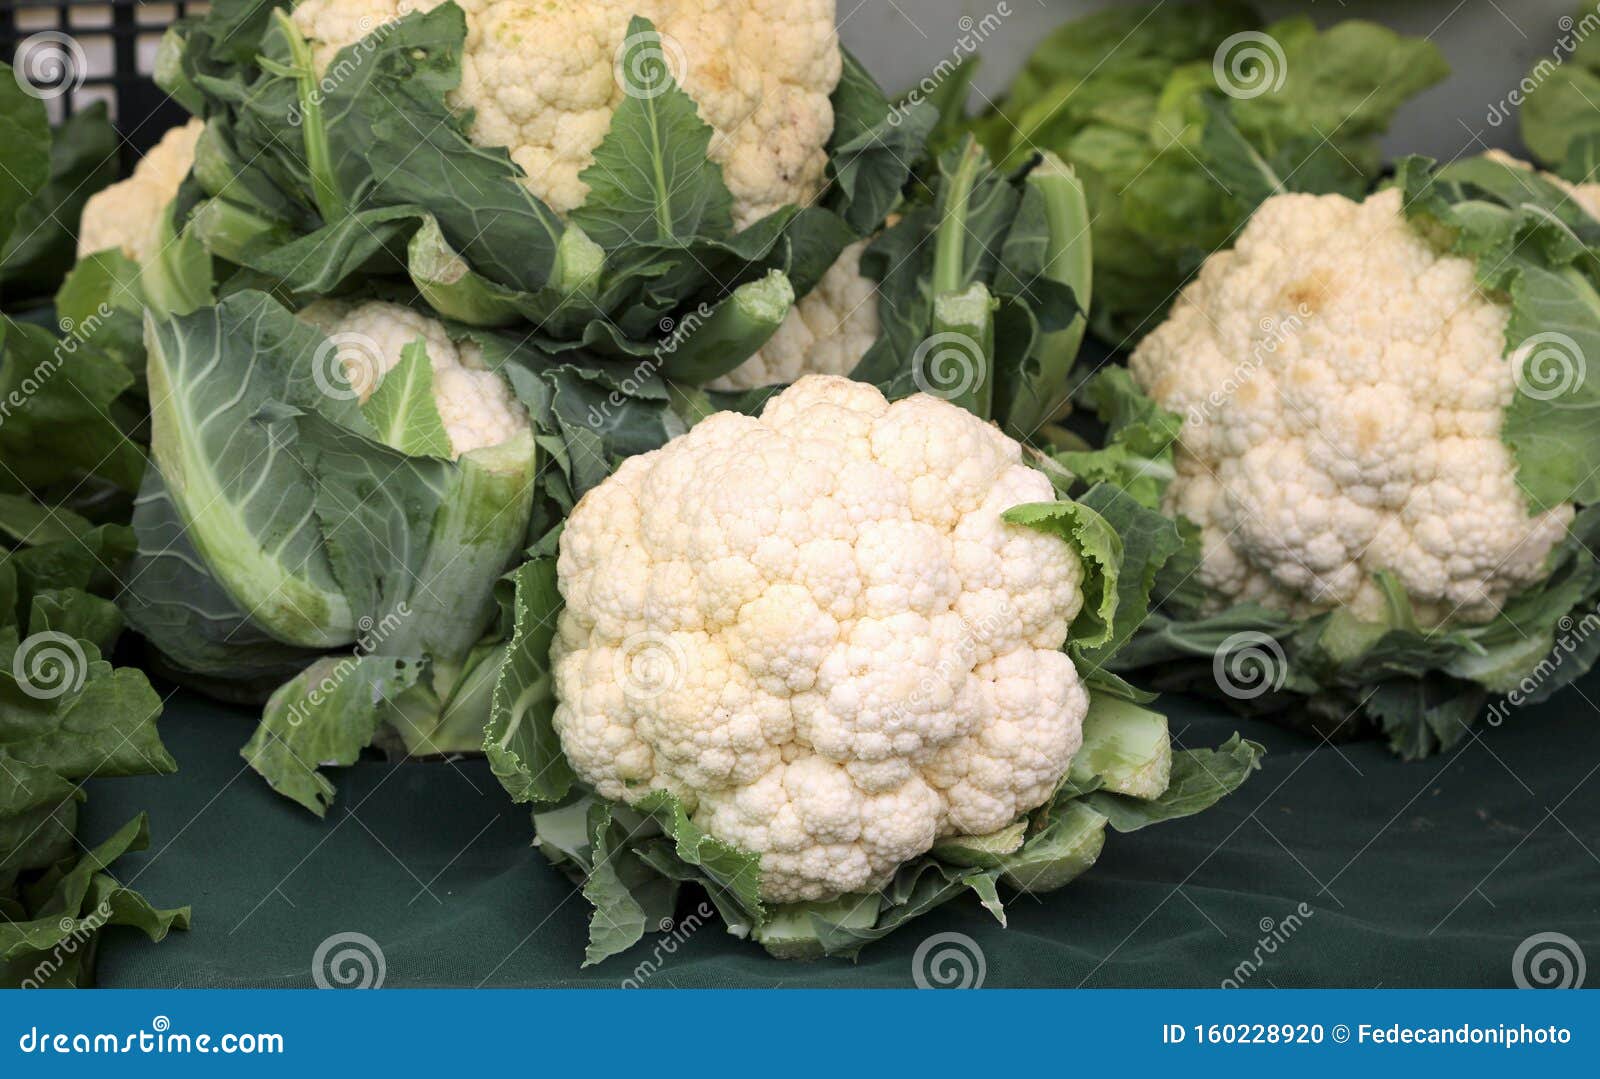 大白菜花库存照片 图片包括有空白 卖主 市场 批发 花椰菜 蔬菜 成熟 销售额 蔬菜水果商